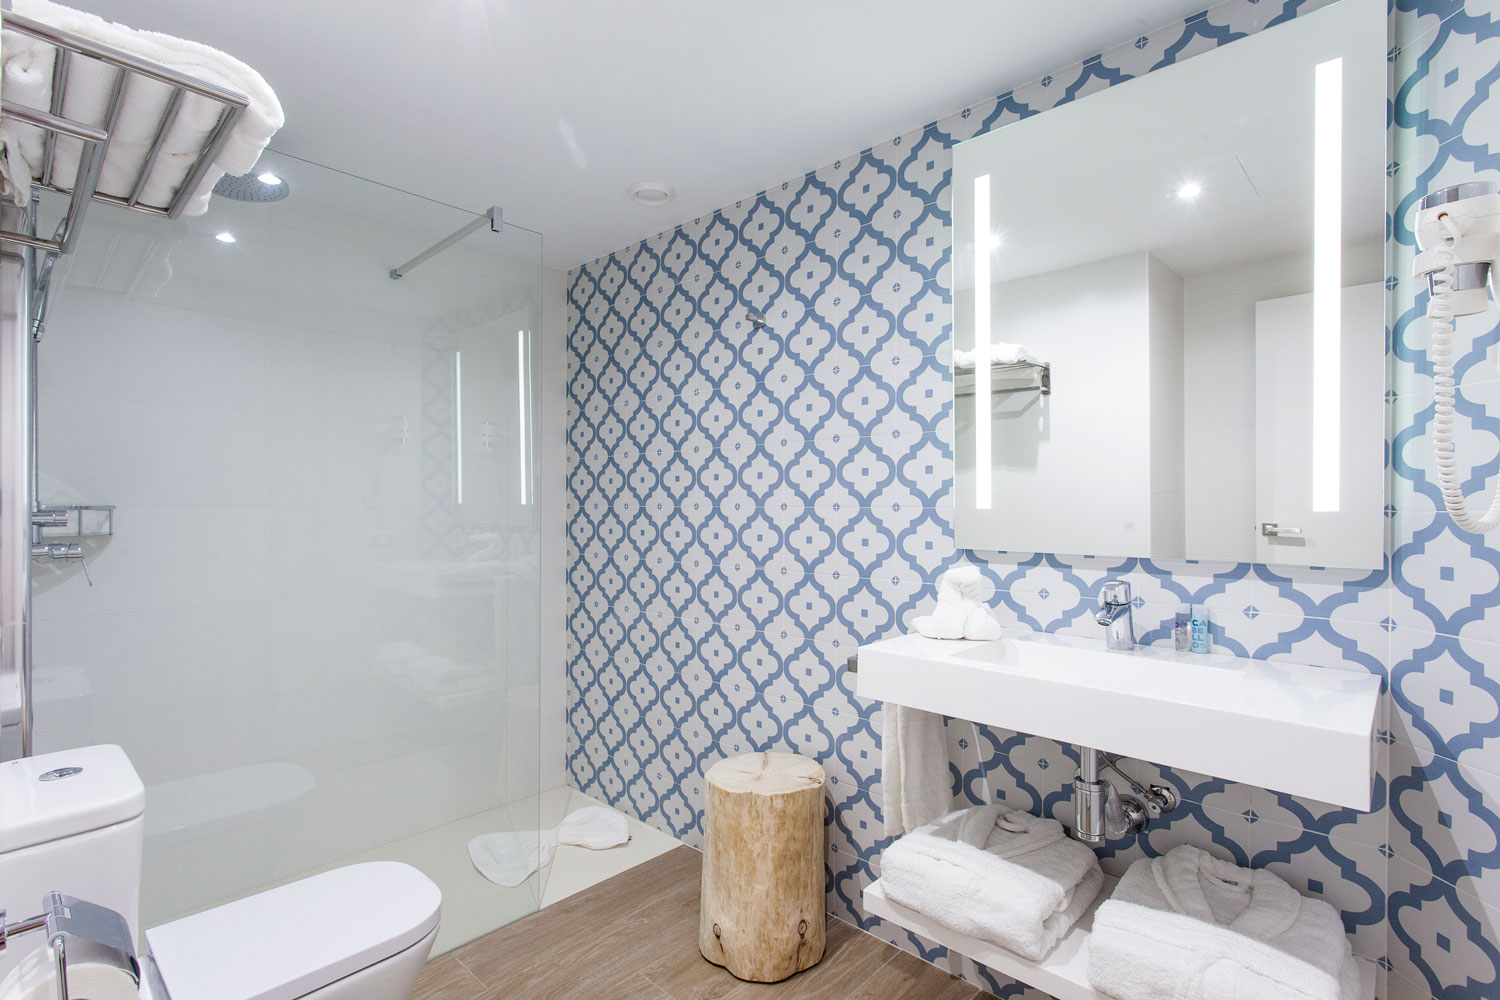 Baño decorado con azulejos con motivos tradicionales mallorquines de tela de Llengües.